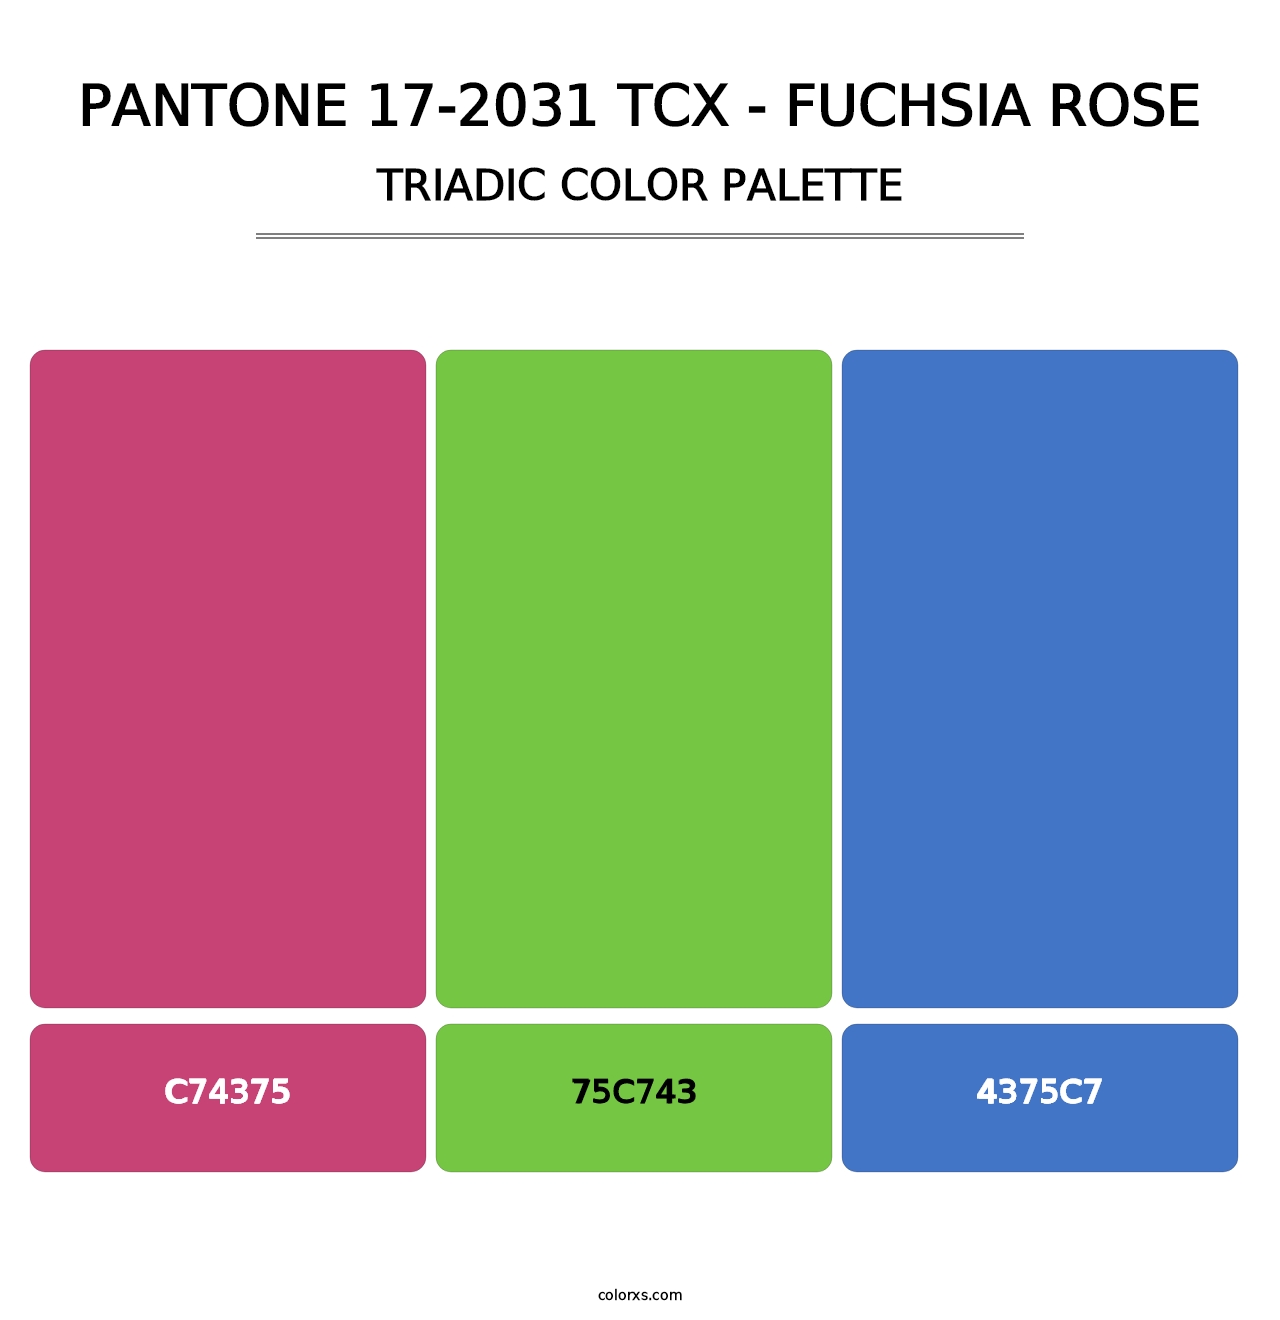 PANTONE 17-2031 TCX - Fuchsia Rose - Triadic Color Palette